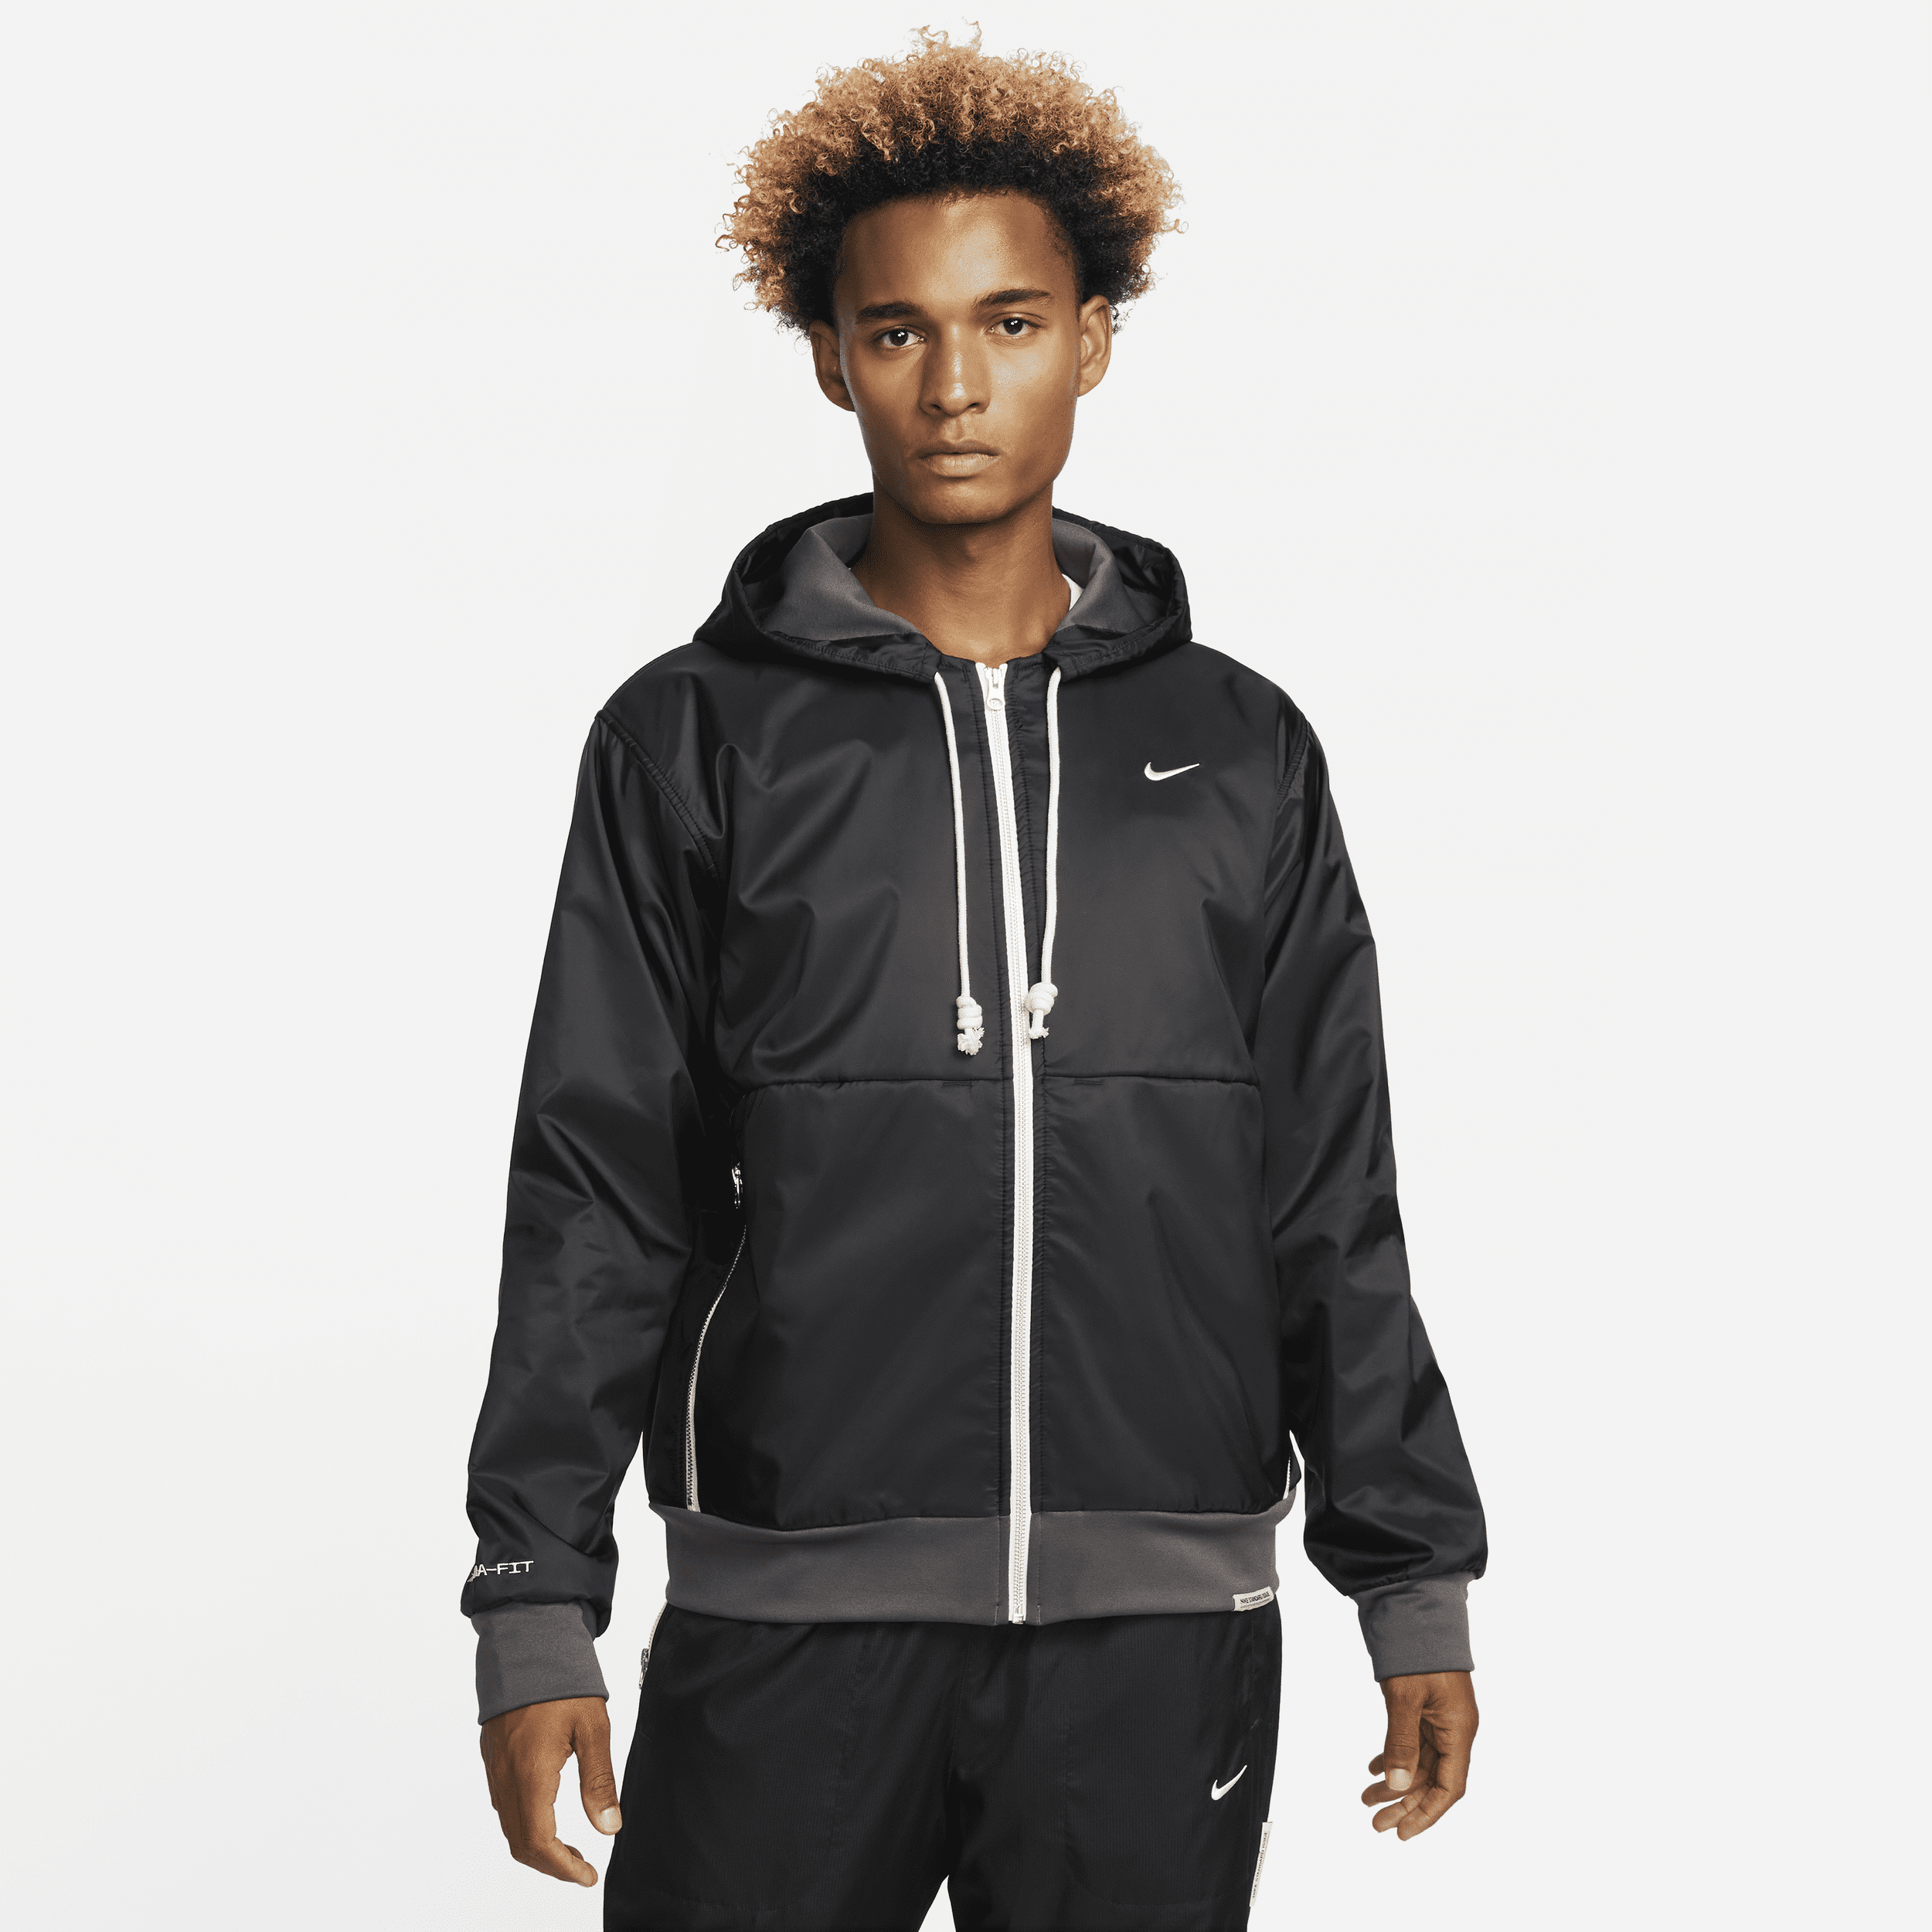 Męska koszykarska bluza z kapturem i zamkiem na całej długości na zimę Nike Therma-FIT Standard Issue - Czerń